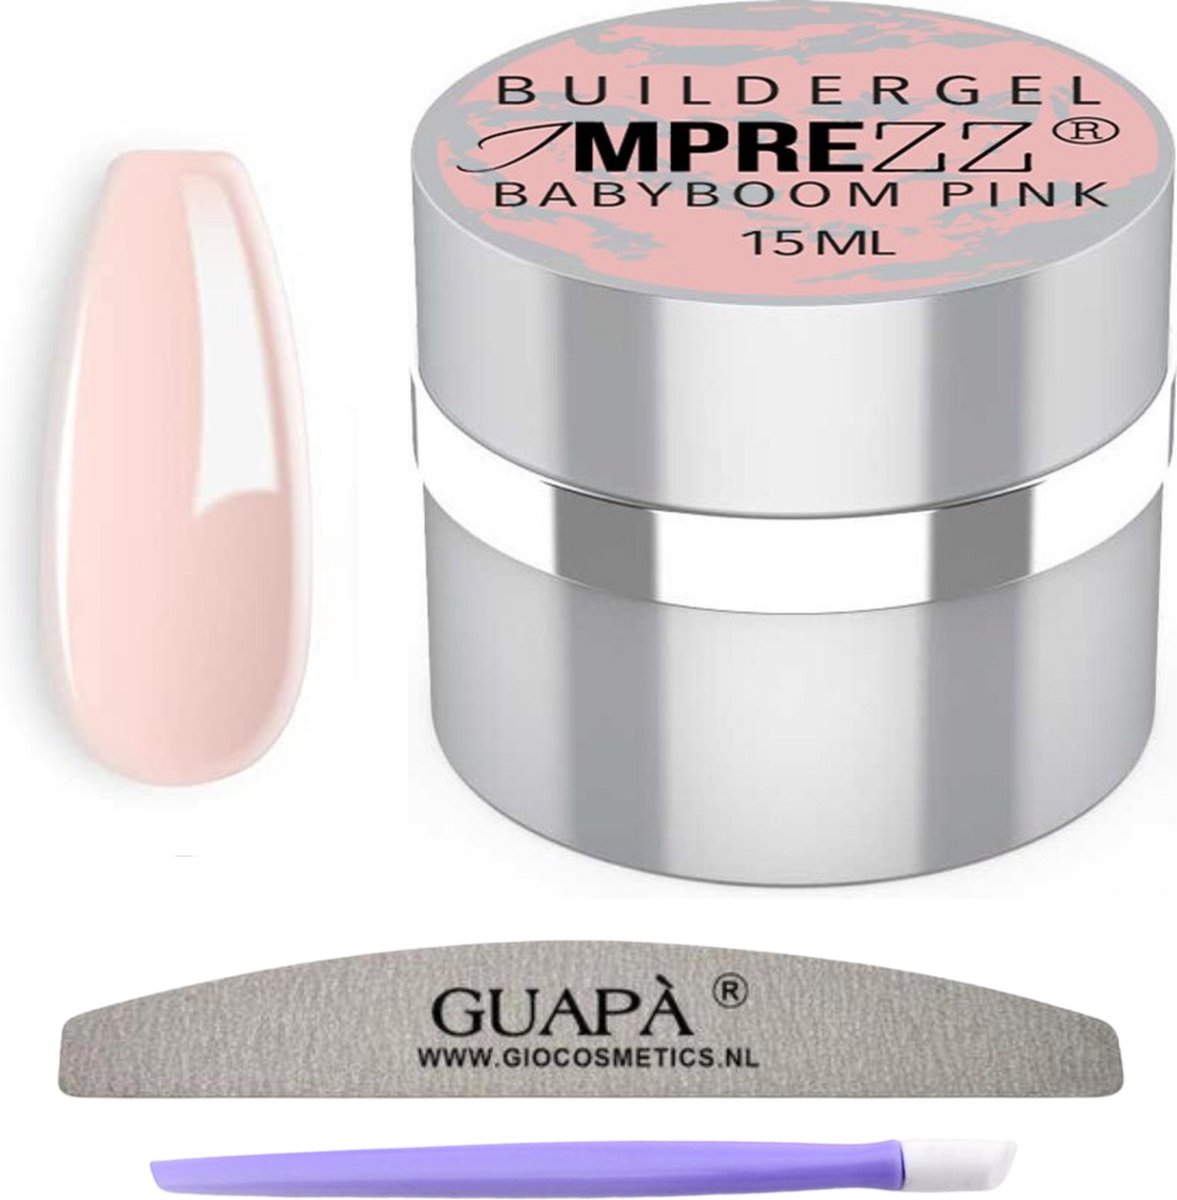 Guapà® builder gel | gellak | gel nagels | babyboom pink | builder gel pink | 15 ml